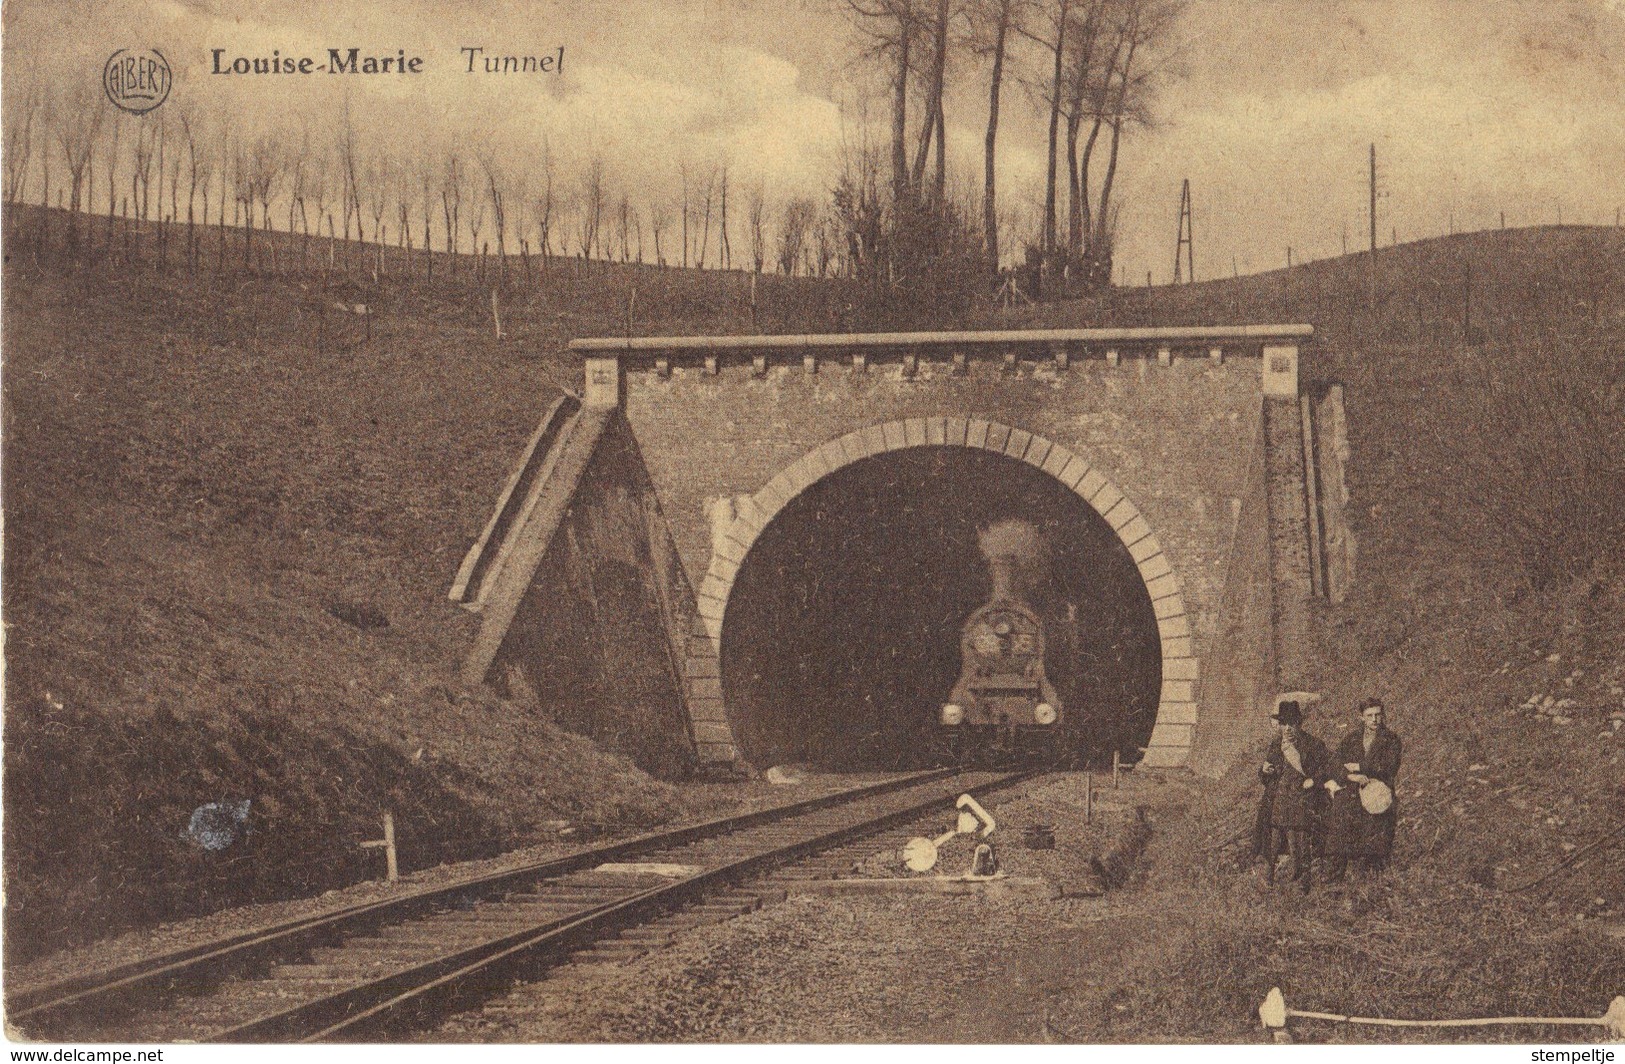 MAAREDAL        Louise Marie    Tunnel   1933 - Maarkedal